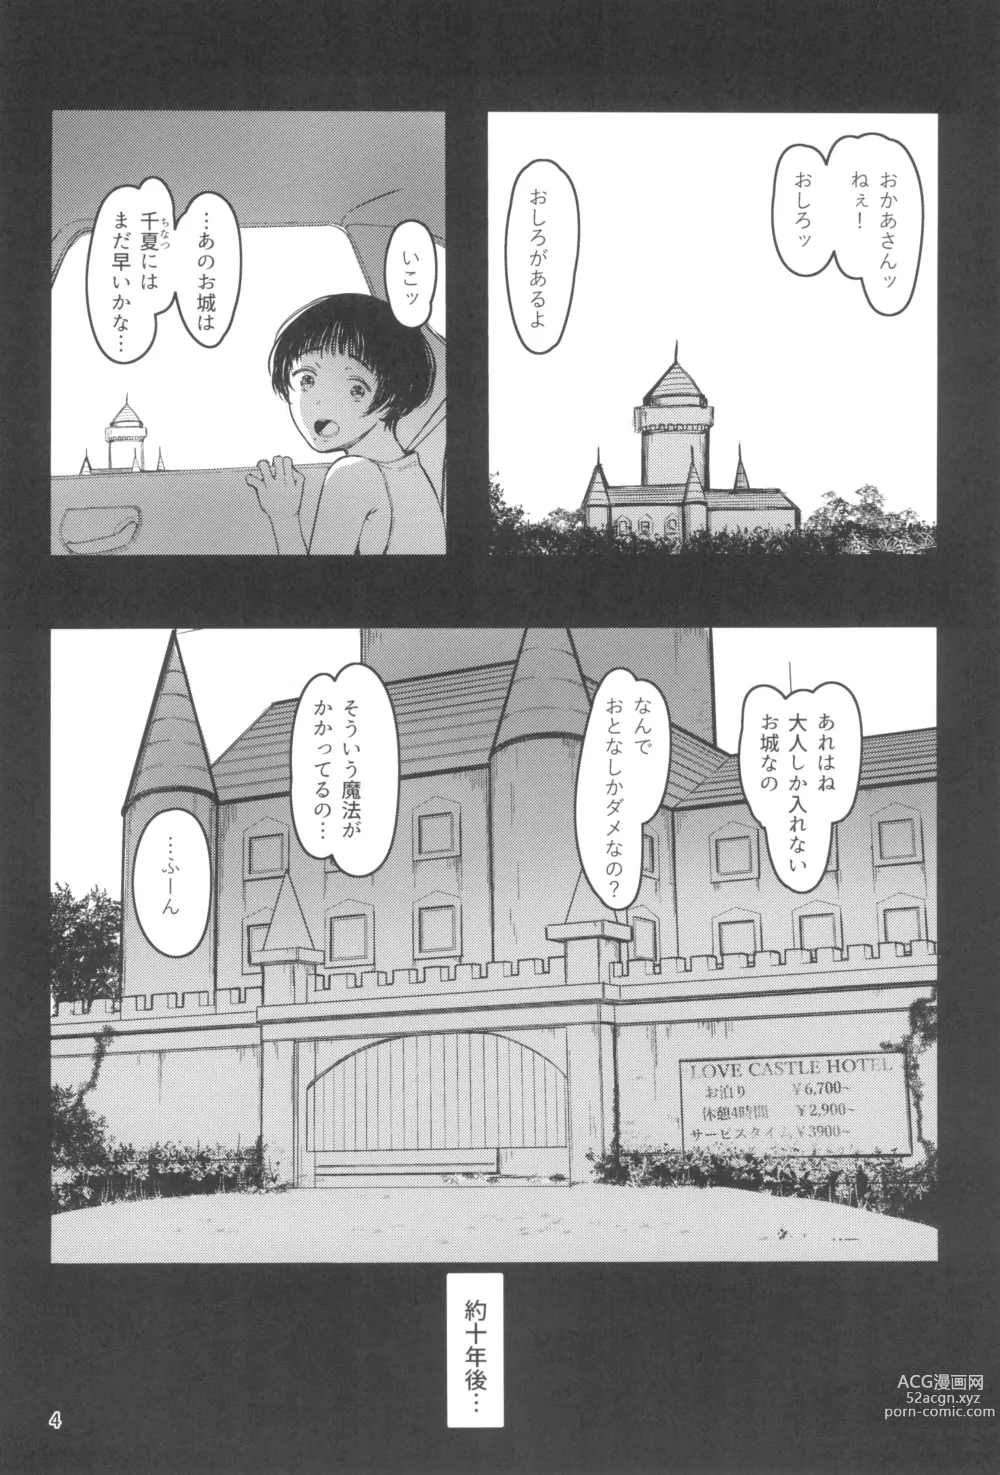 Page 4 of doujinshi Tonari no Chinatsu-chan R 07